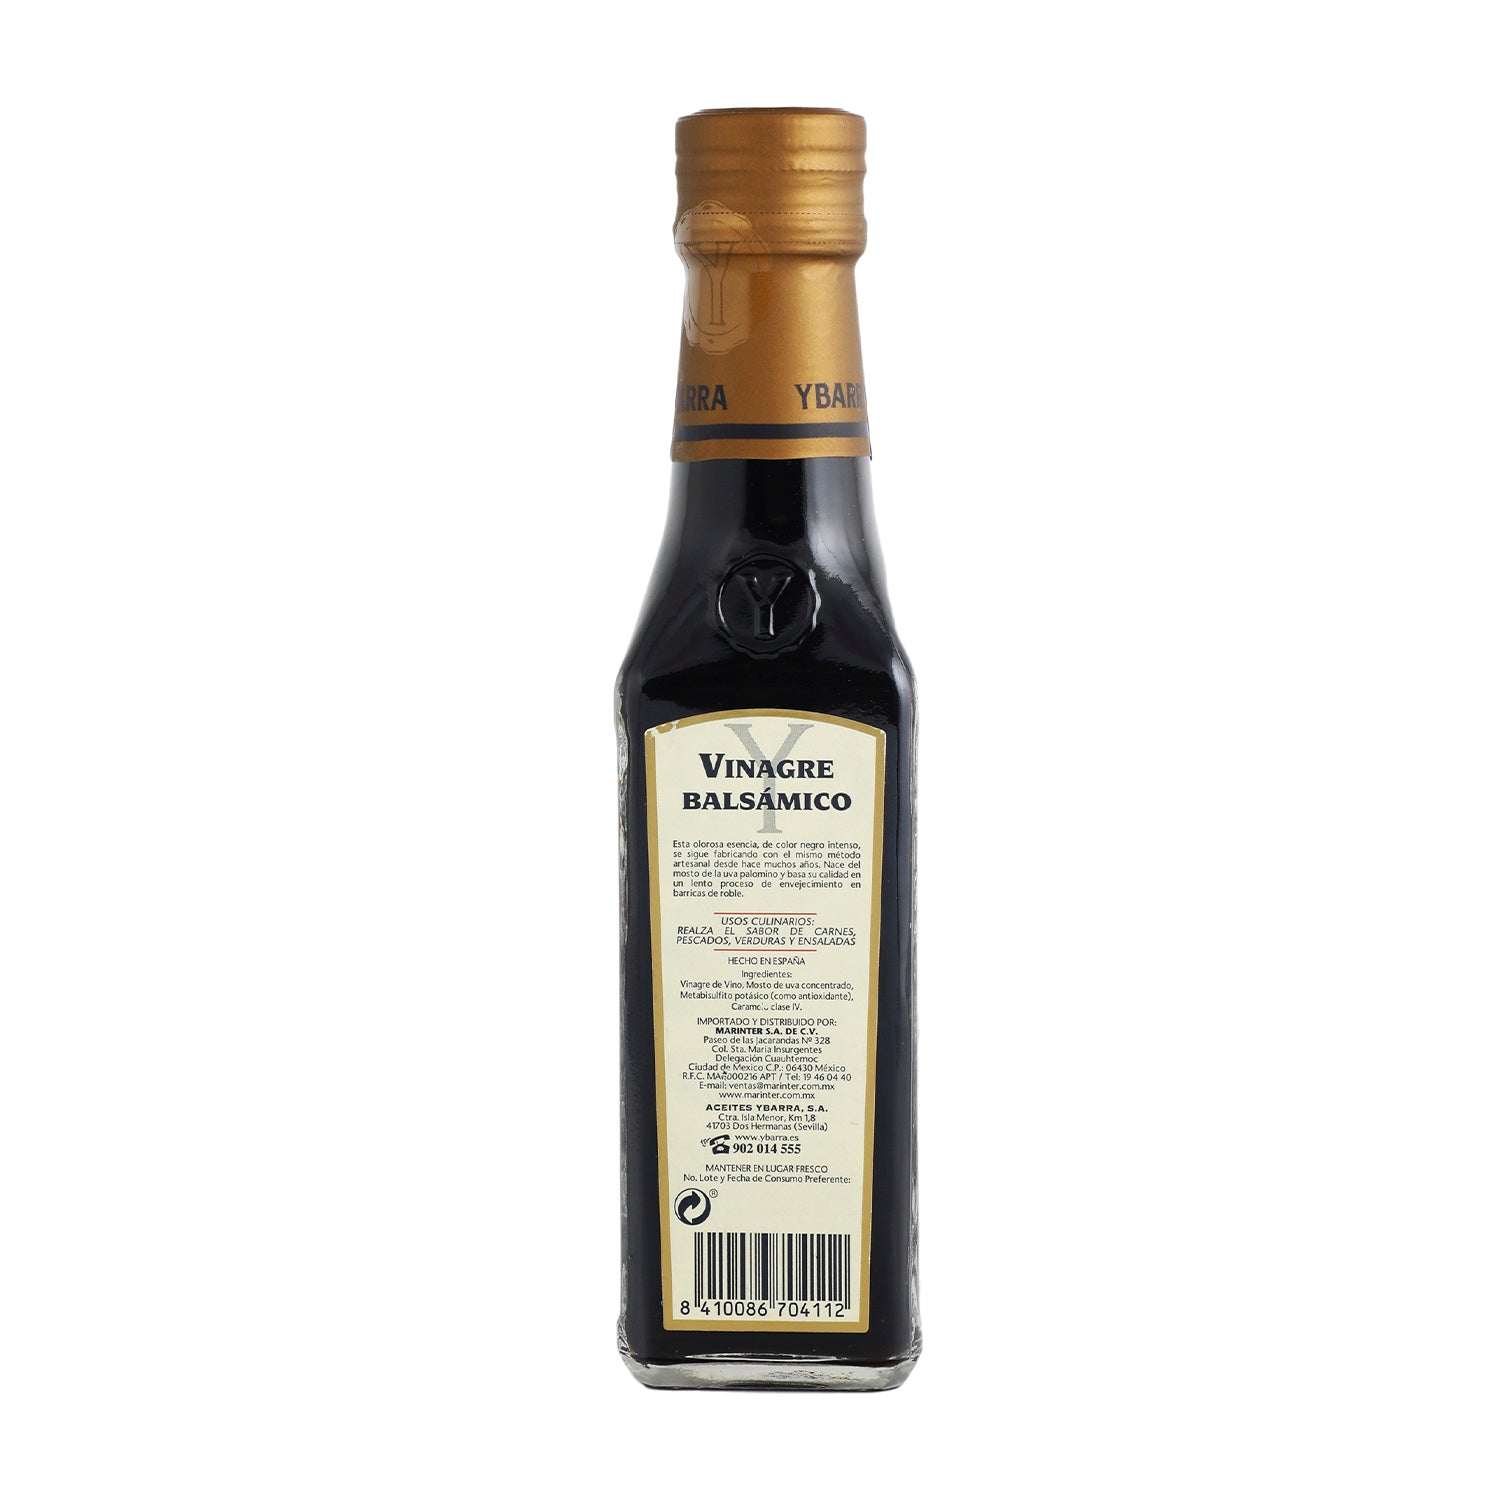 Vinagre - YBarra Balsámico - 250 ml